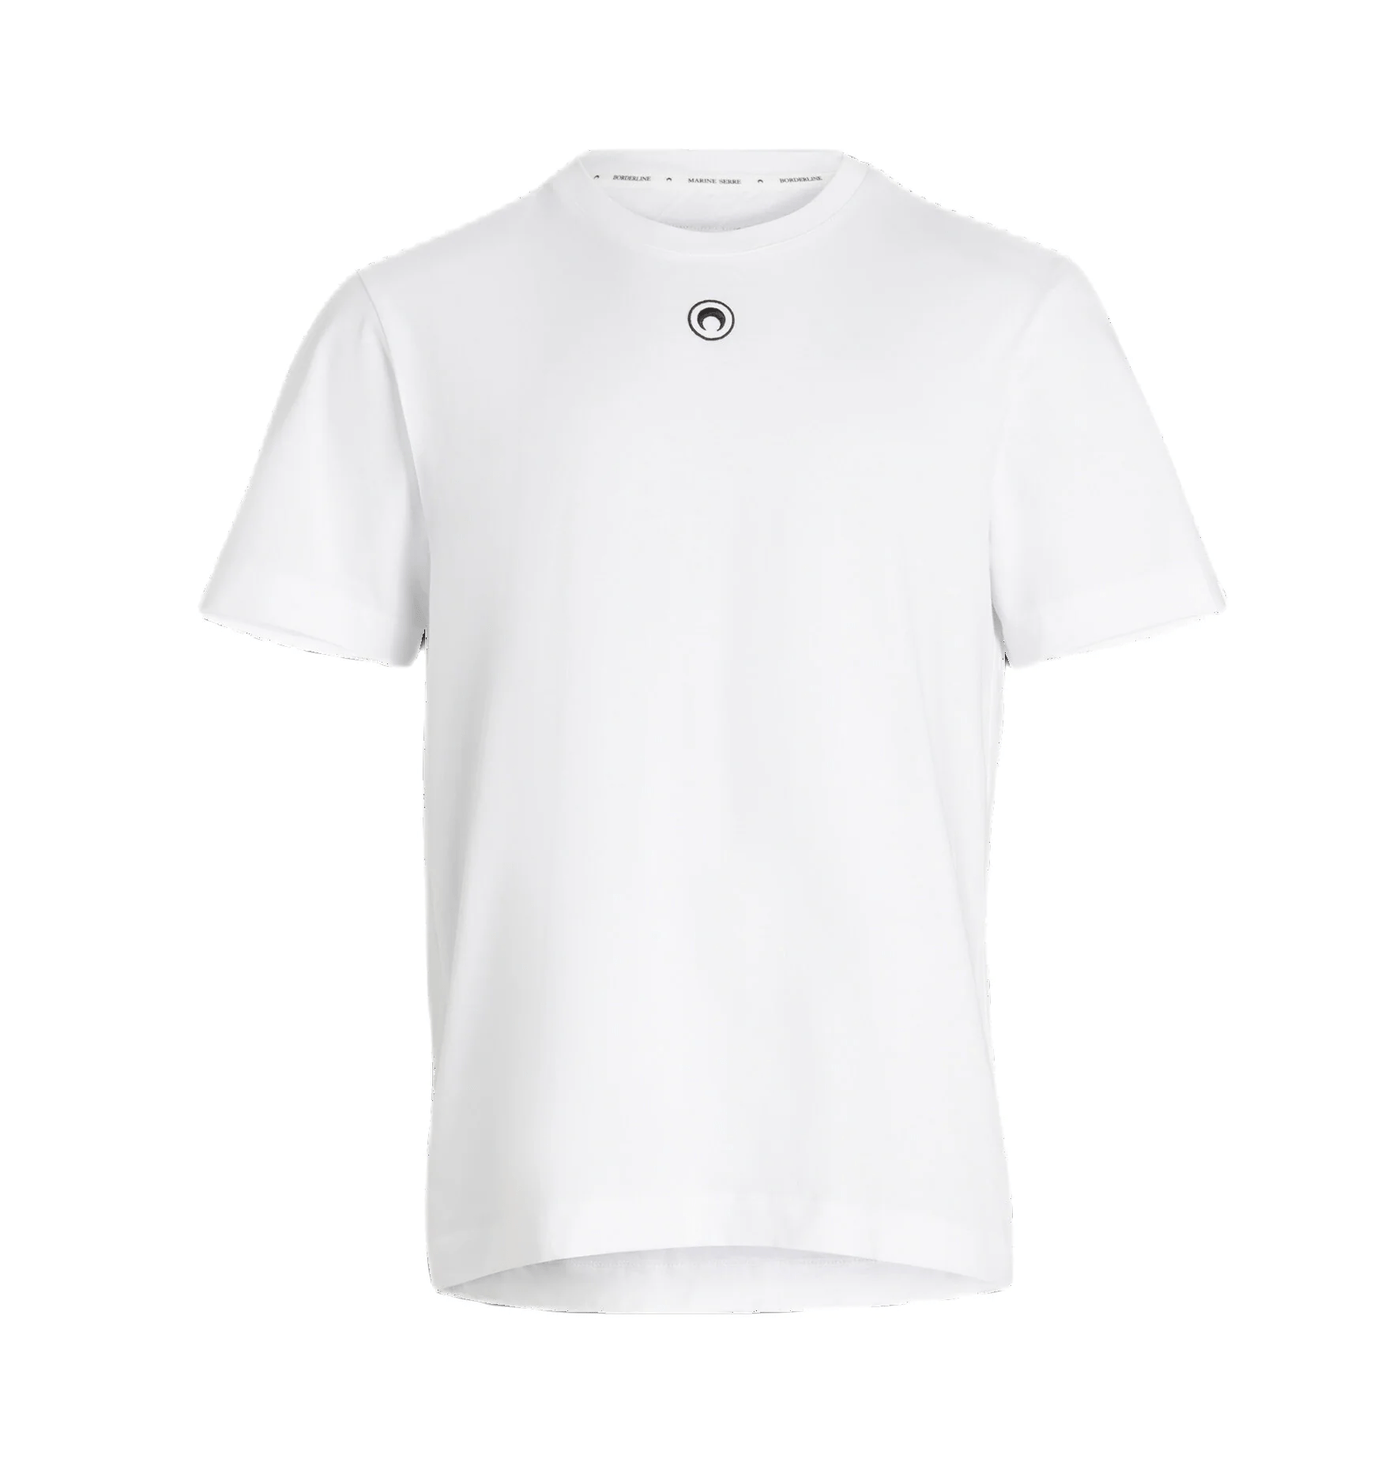 Marine Serre - T Shirt white uni en coton biologique - Lothaire